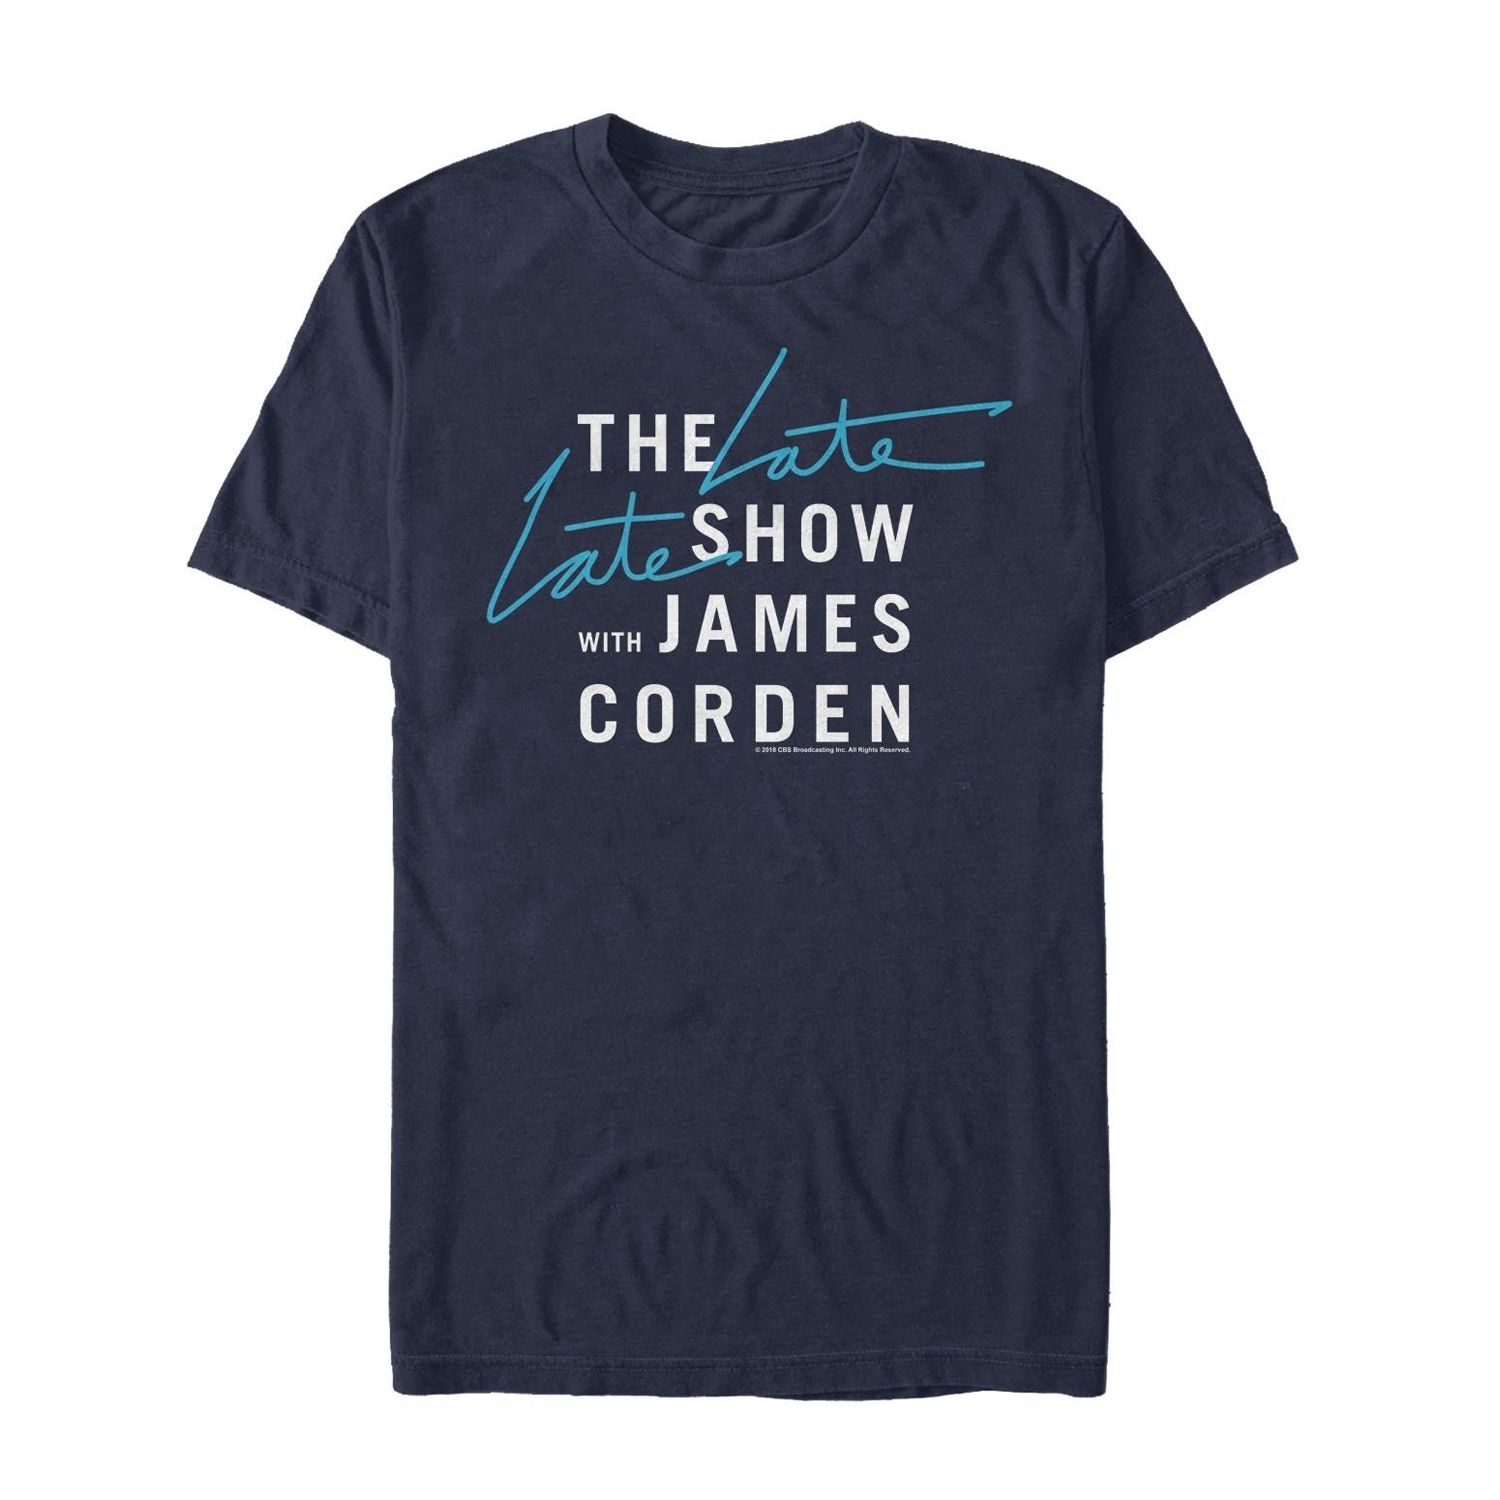 Мужская футболка The Late Late Show с Джеймсом Корденом Licensed Character